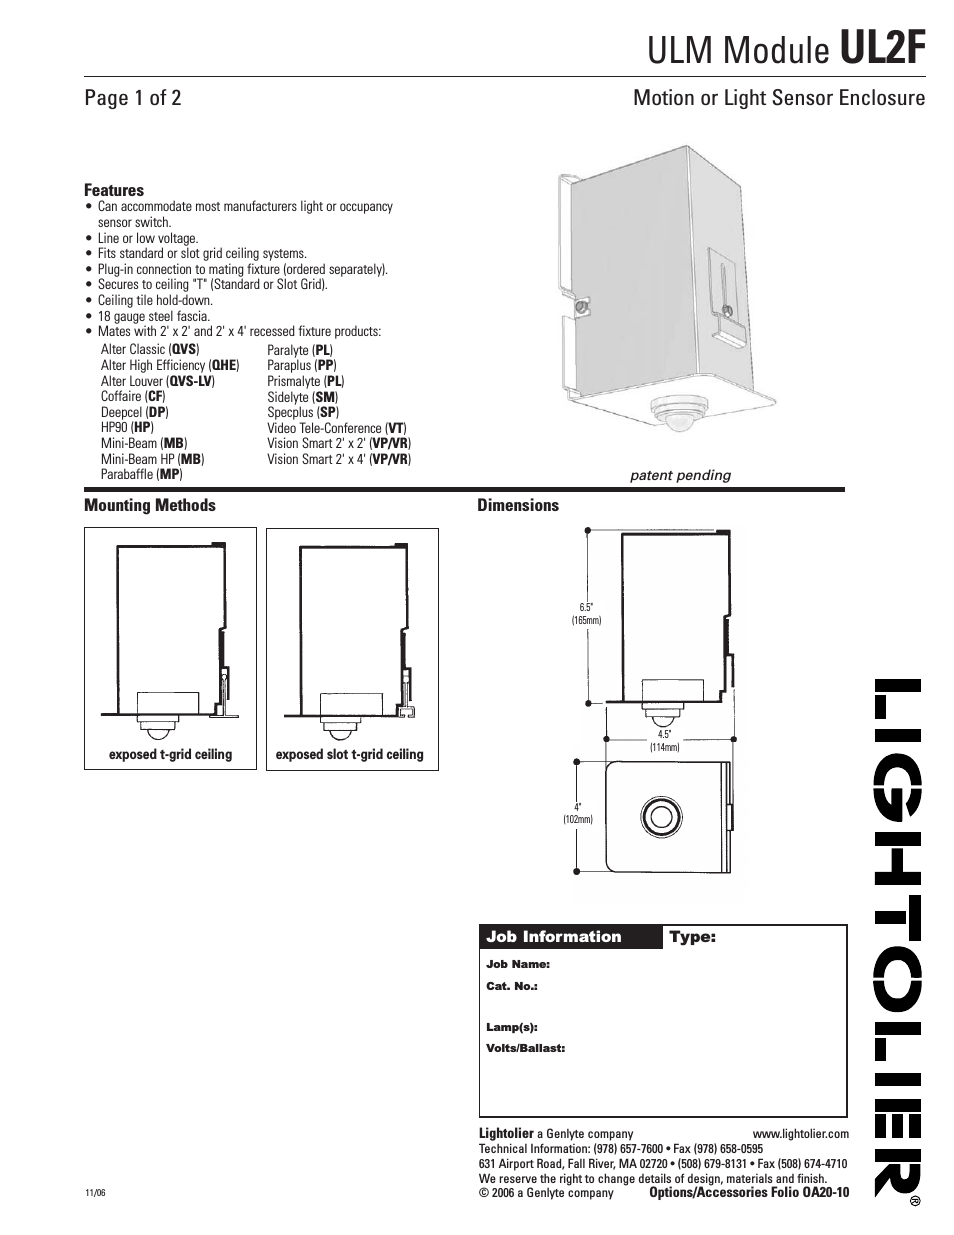 Motion or Light Sensor Enclosure OA20-10